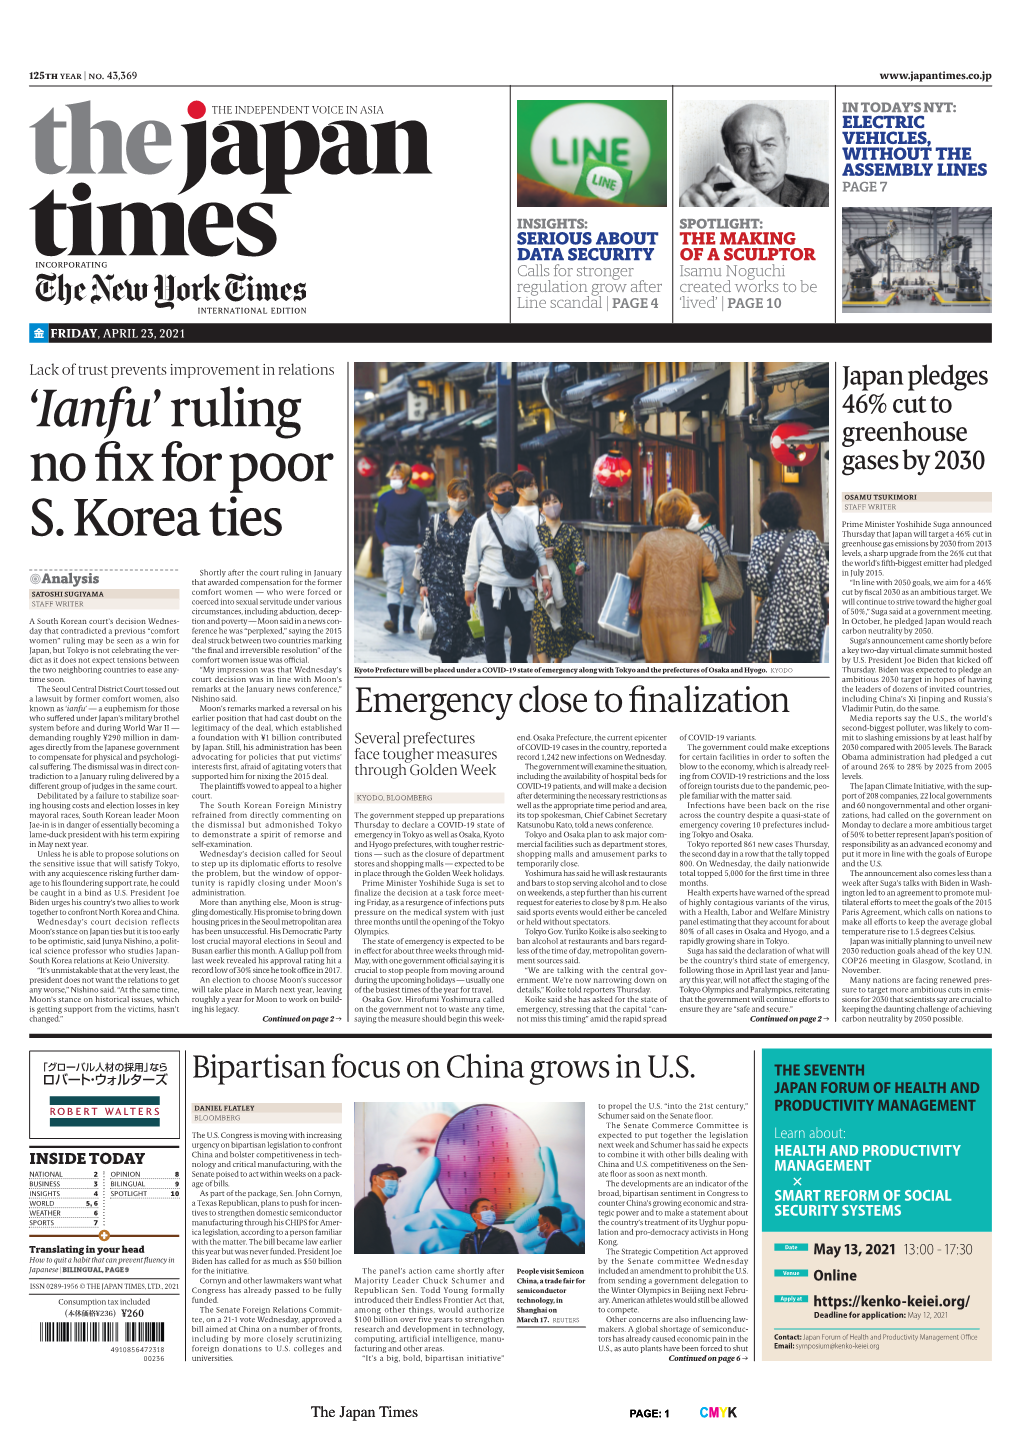 'Ianfu' Ruling No Fix for Poor S. Korea Ties